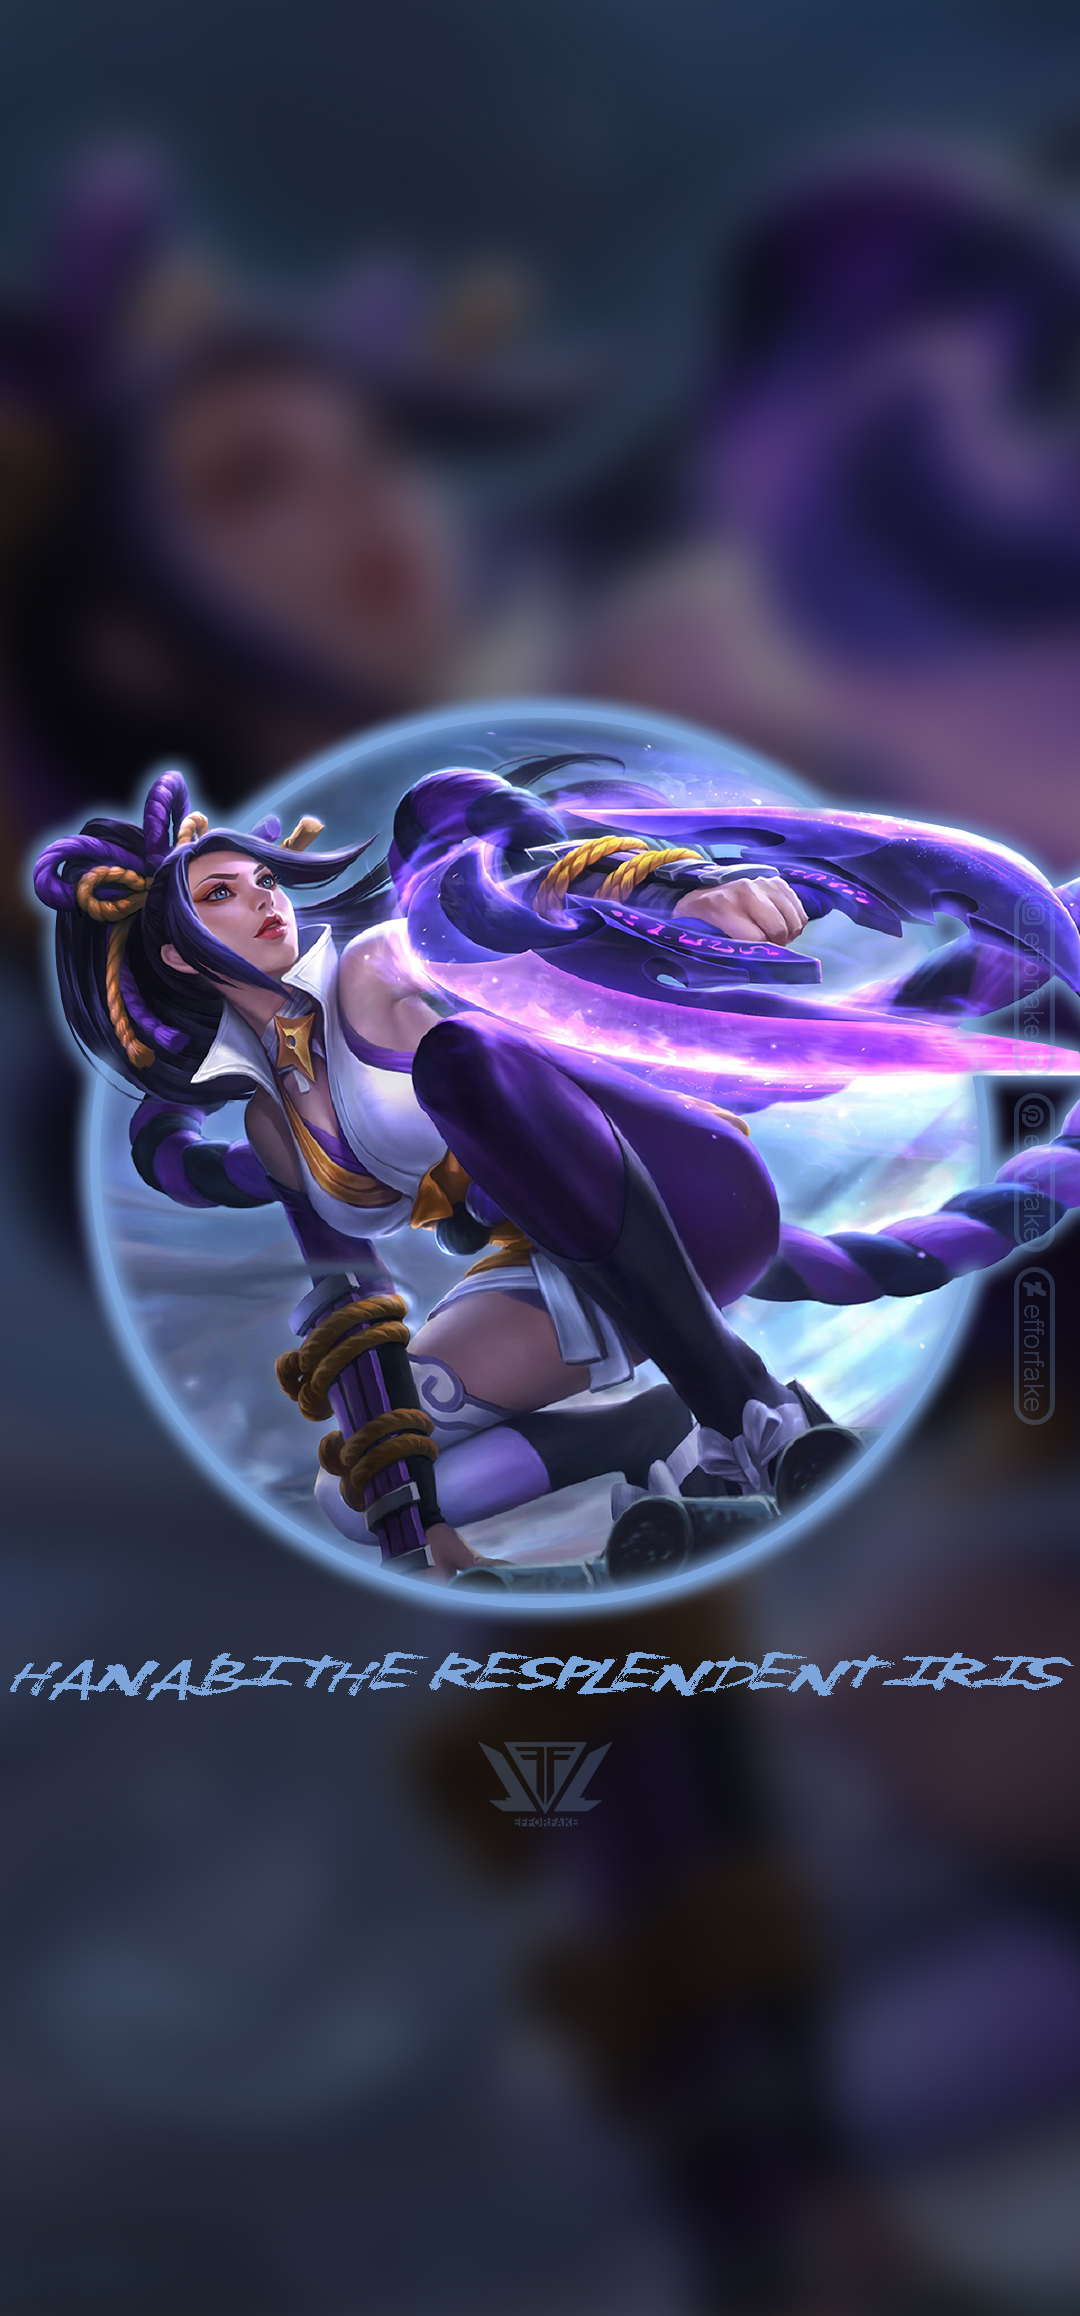 Hanabi Resplendent Iris - Mobile Legends Wallpaper by efforfake on  DeviantArt